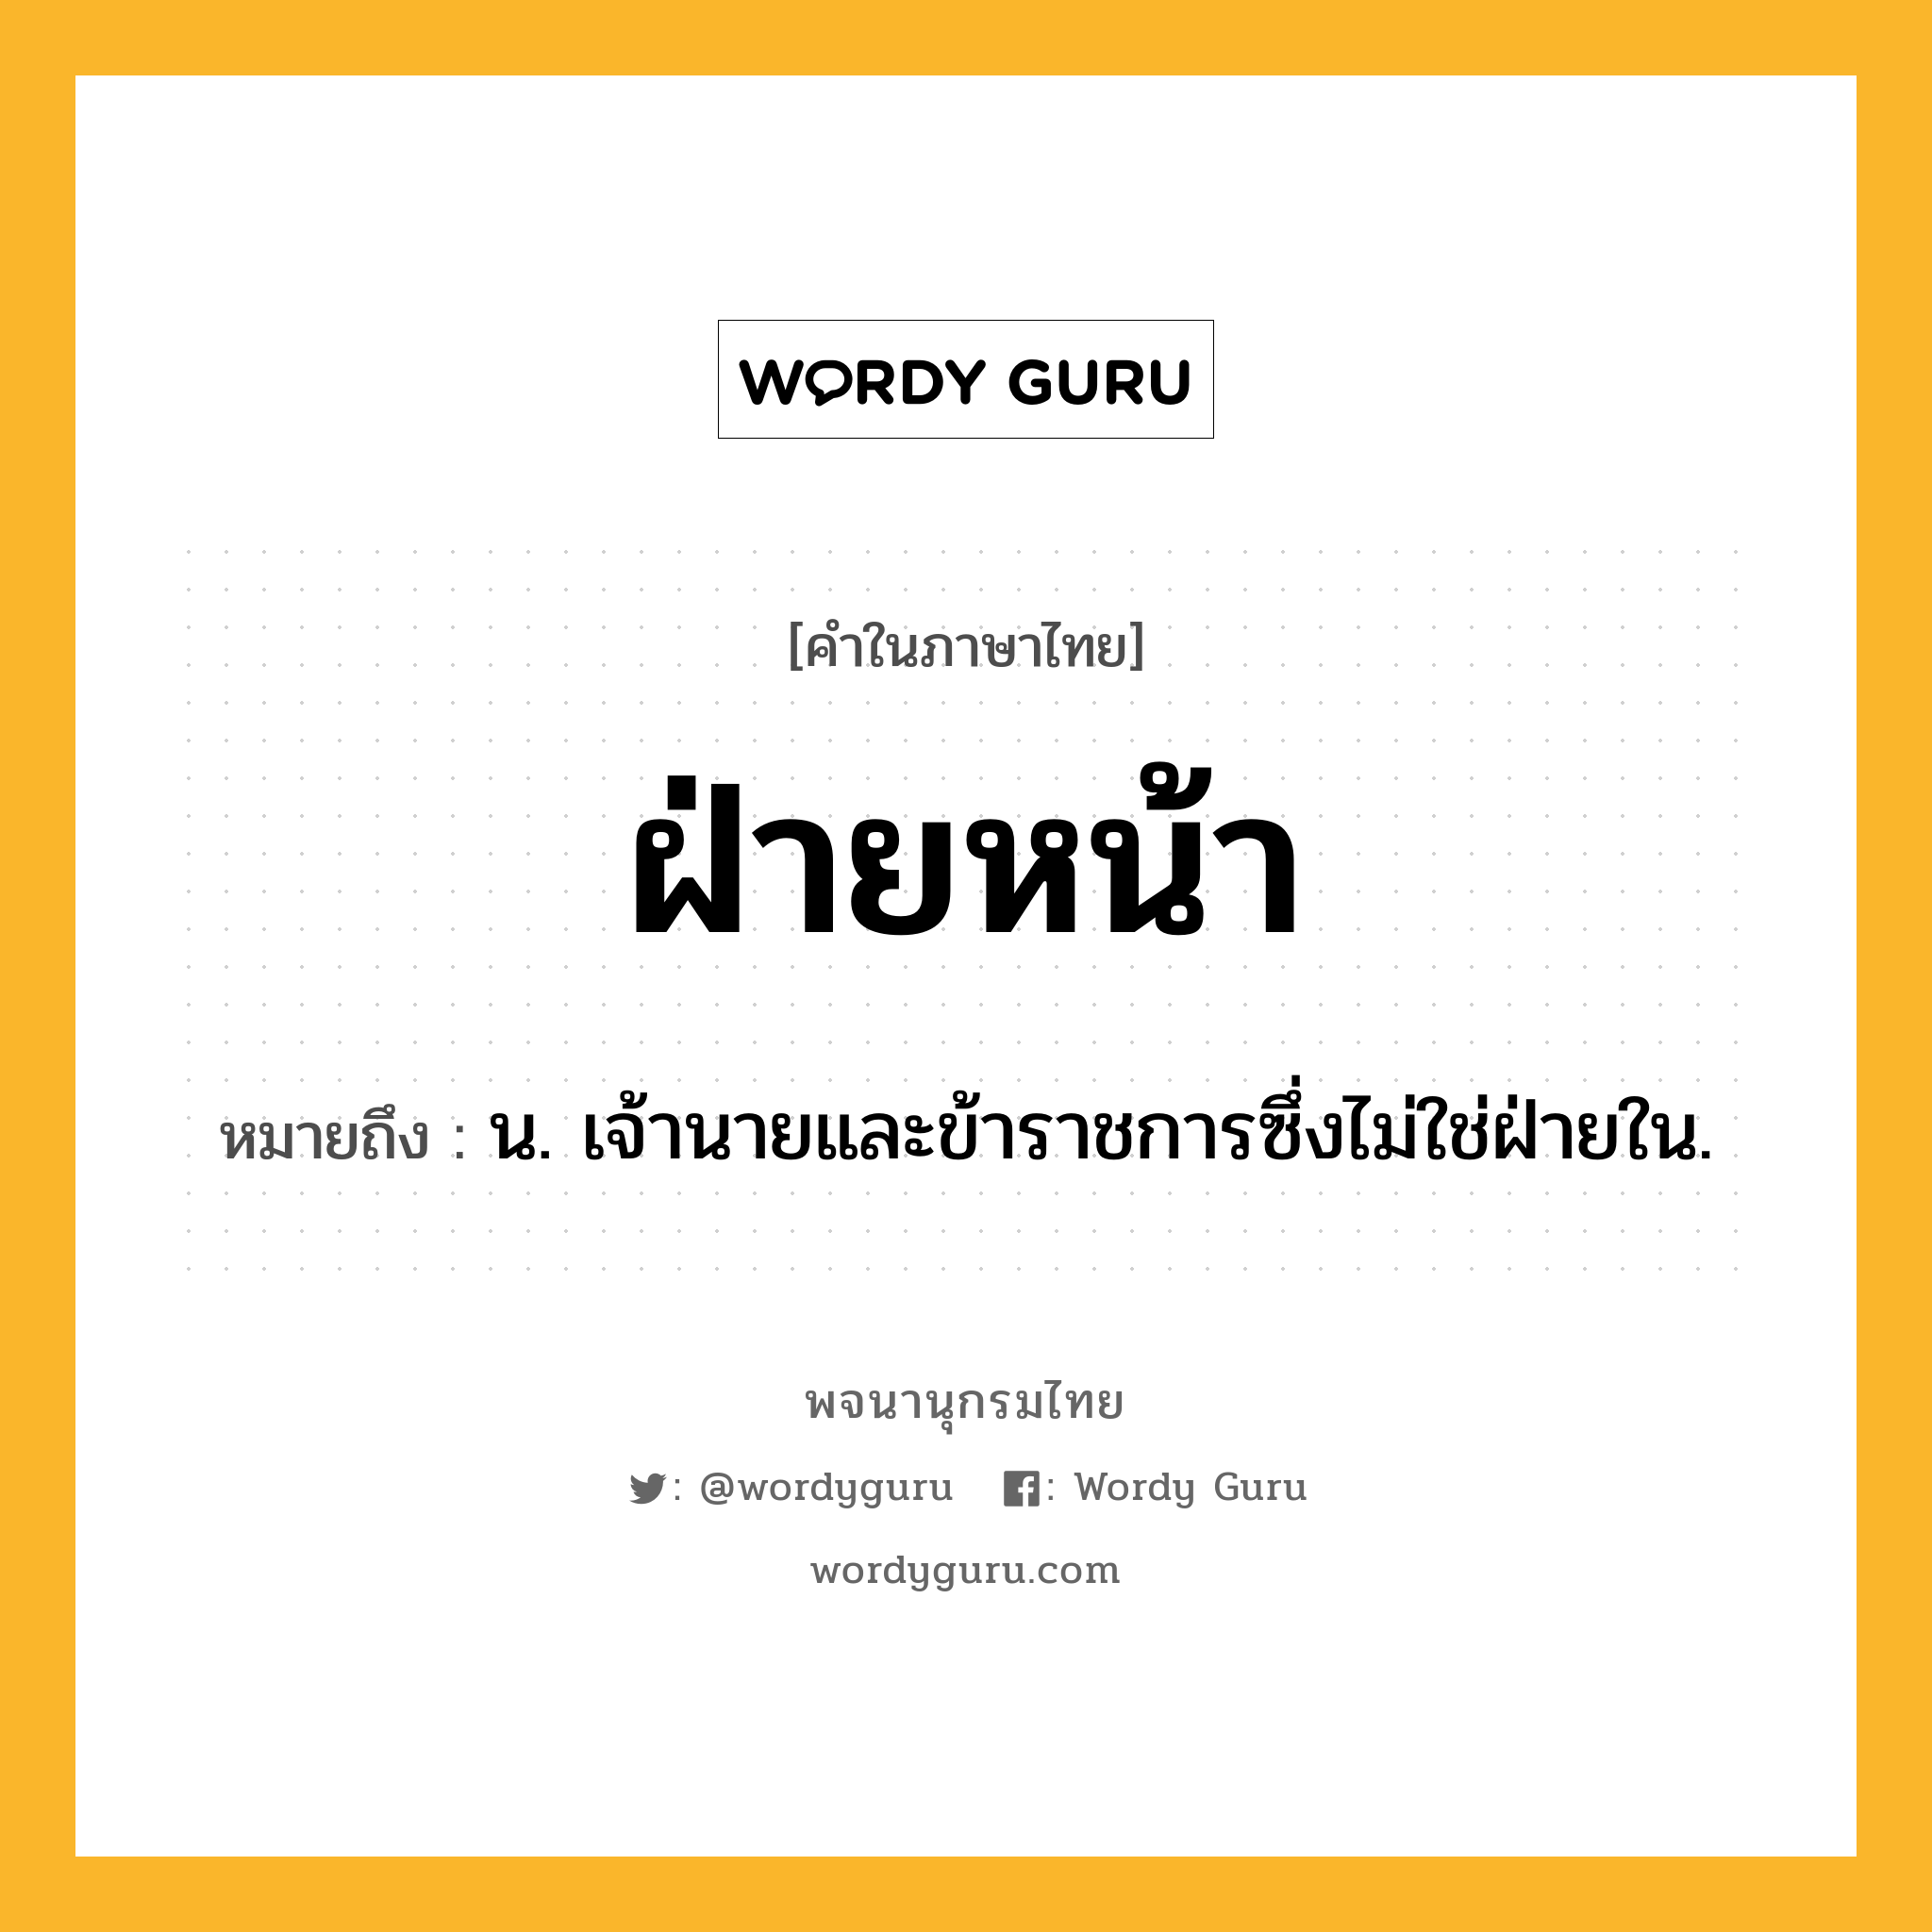 ฝ่ายหน้า หมายถึงอะไร?, คำในภาษาไทย ฝ่ายหน้า หมายถึง น. เจ้านายและข้าราชการซึ่งไม่ใช่ฝ่ายใน.